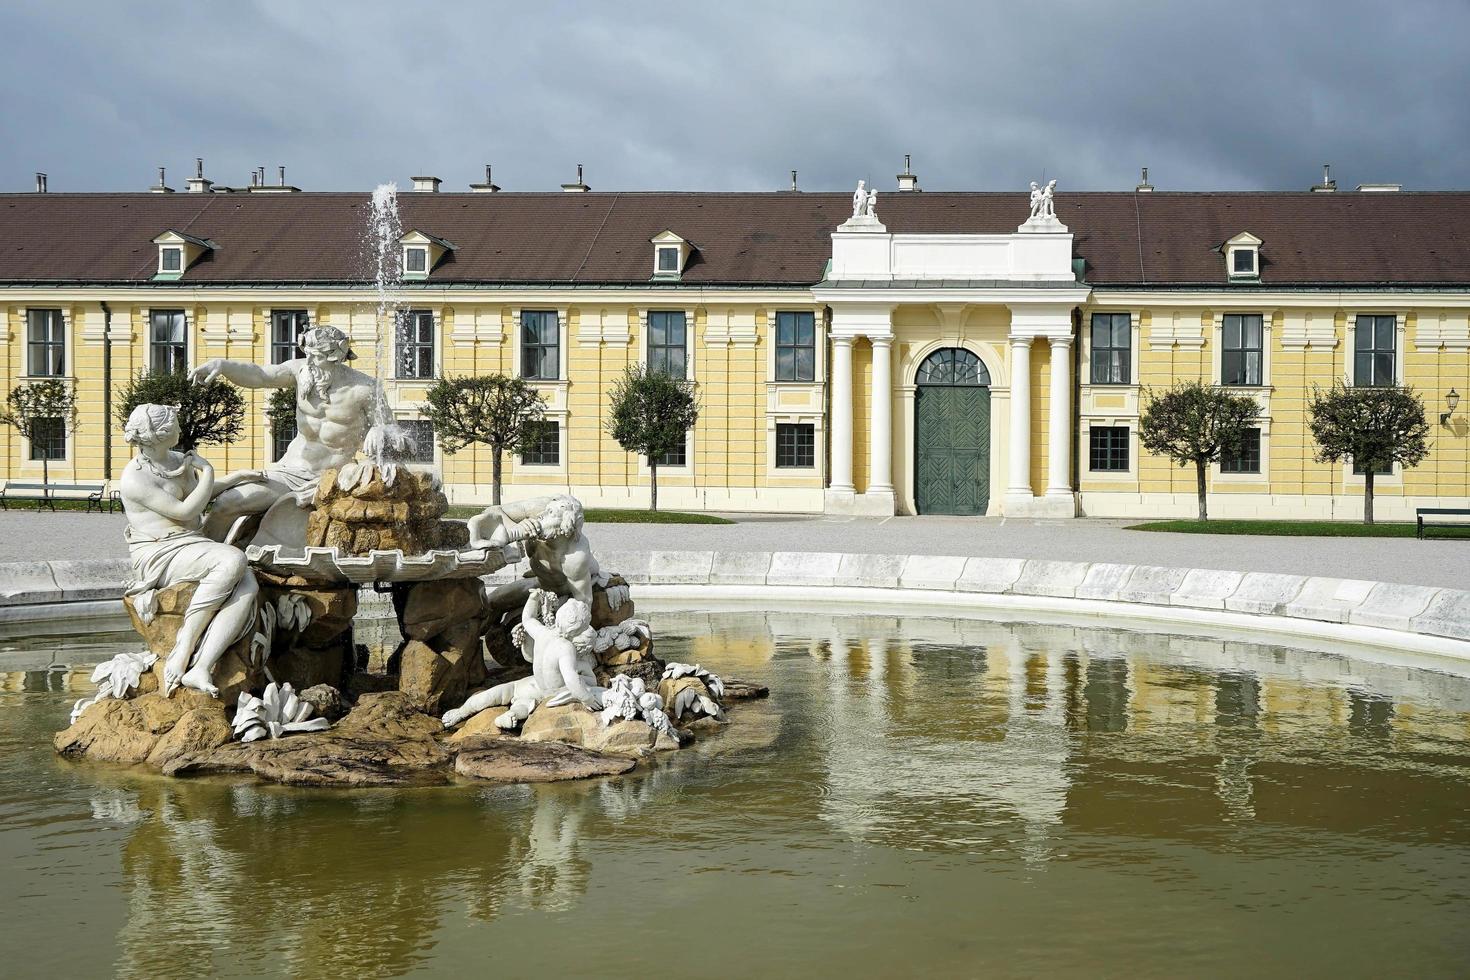 wien, österreich, 2014. donau, inn und enns statuen im schloss schönbrunn in wien foto